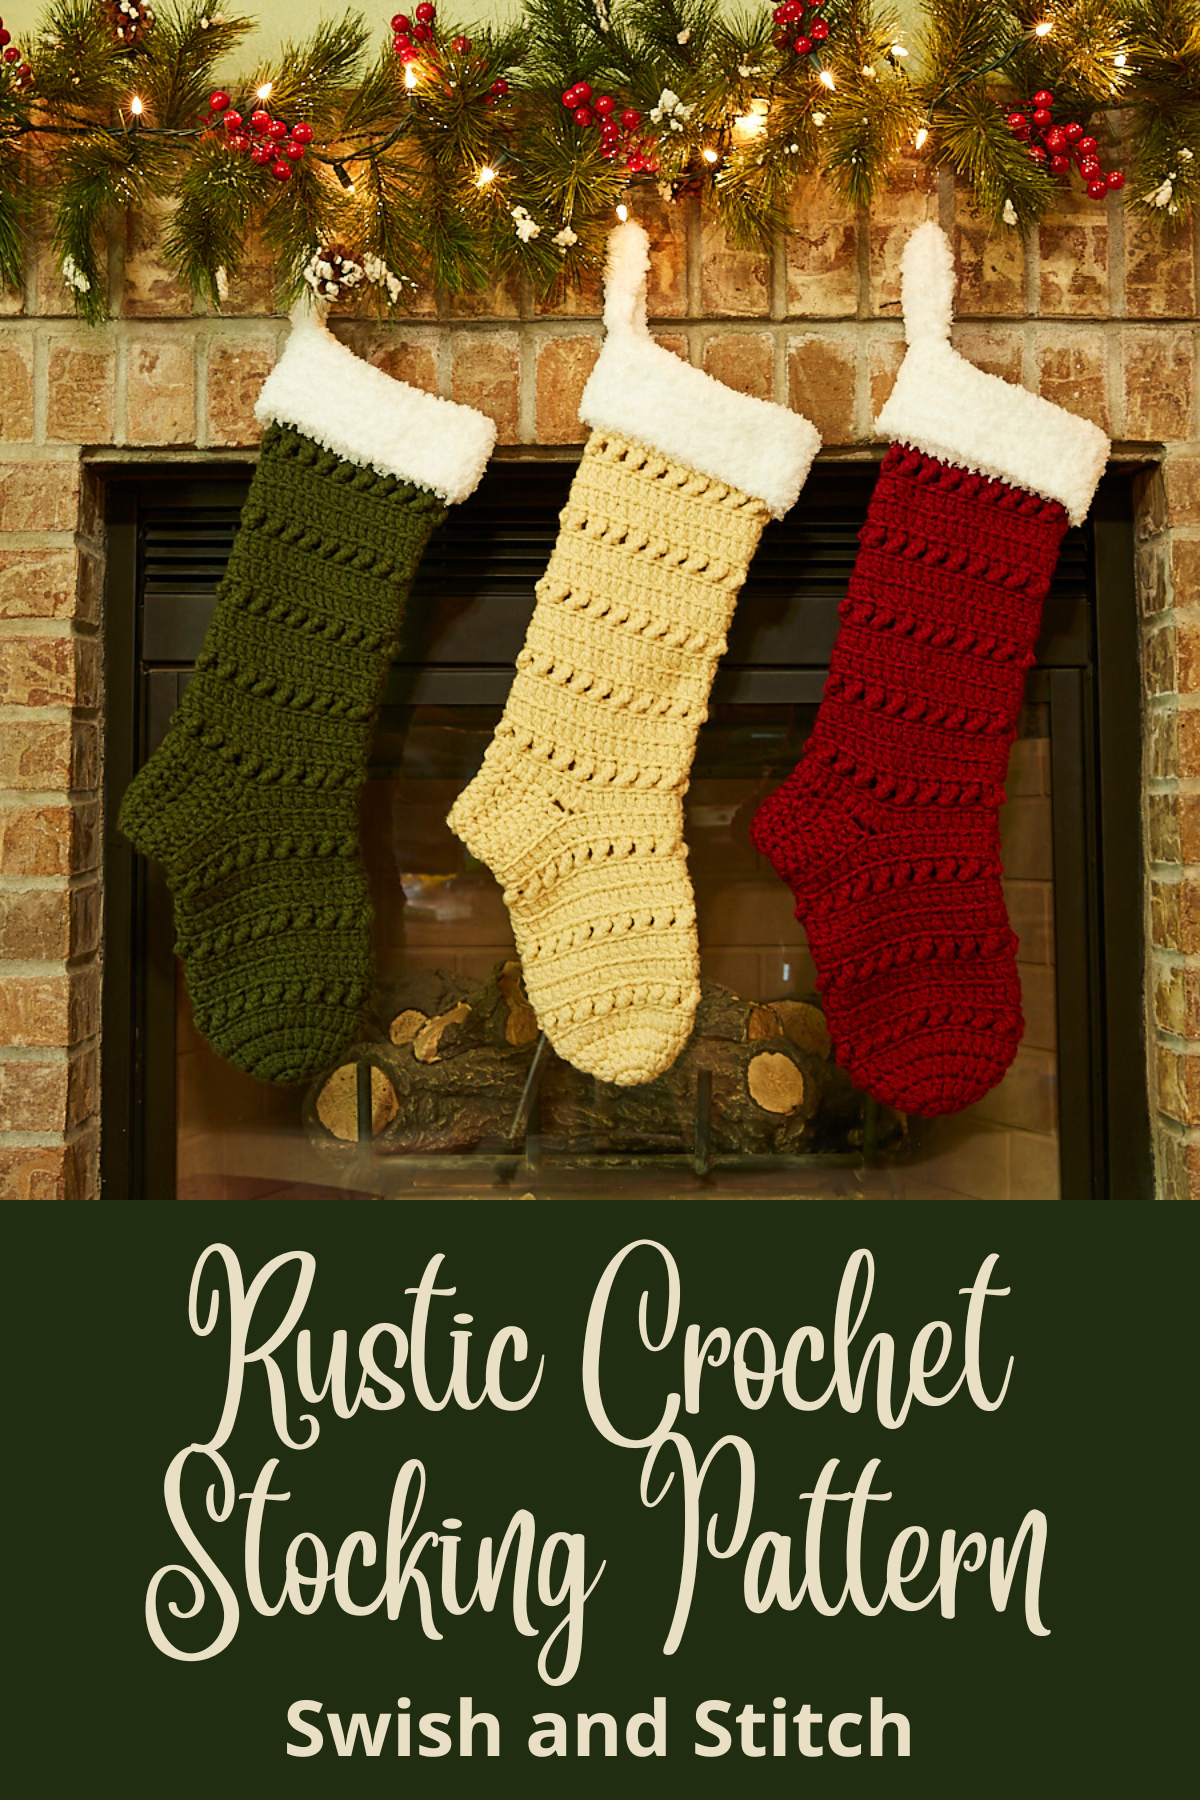 Silverthorne Crochet Christmas Stocking - Pinterest Image 